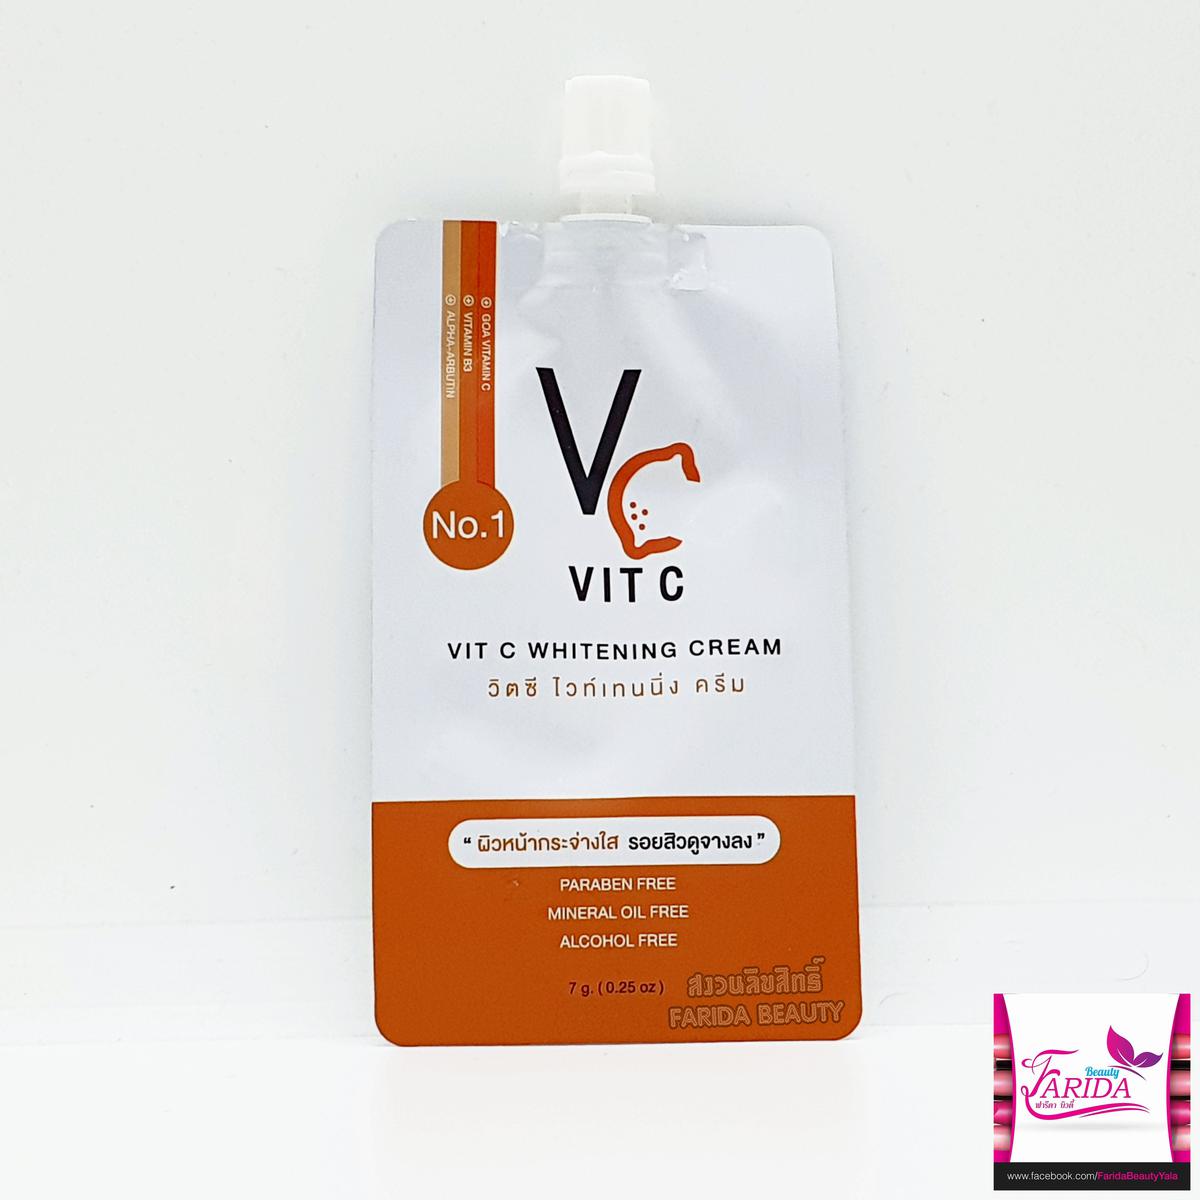 1ซอง) Vc Vit C Whitening Cream วีซี วิตซี ไวท์เทนนิ่ง ครีม ครีมซอง เซเว่น  (ครีมน้องฉัตร แบบซอง)